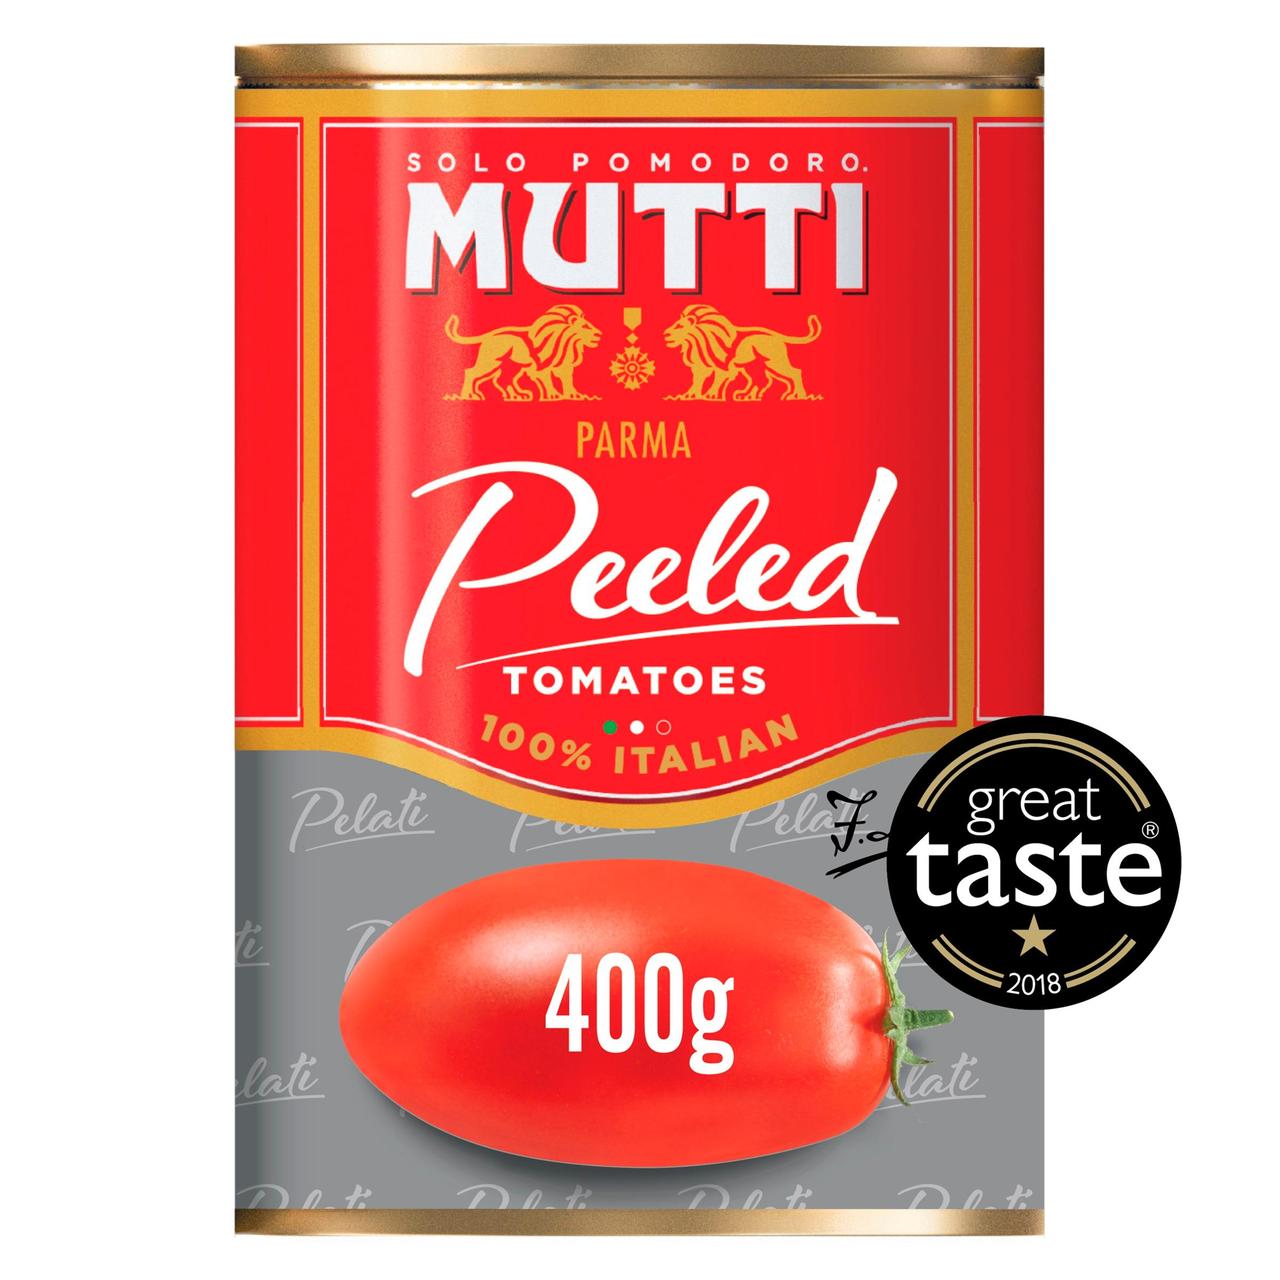 Mutti Peeled Tomatoes 400g